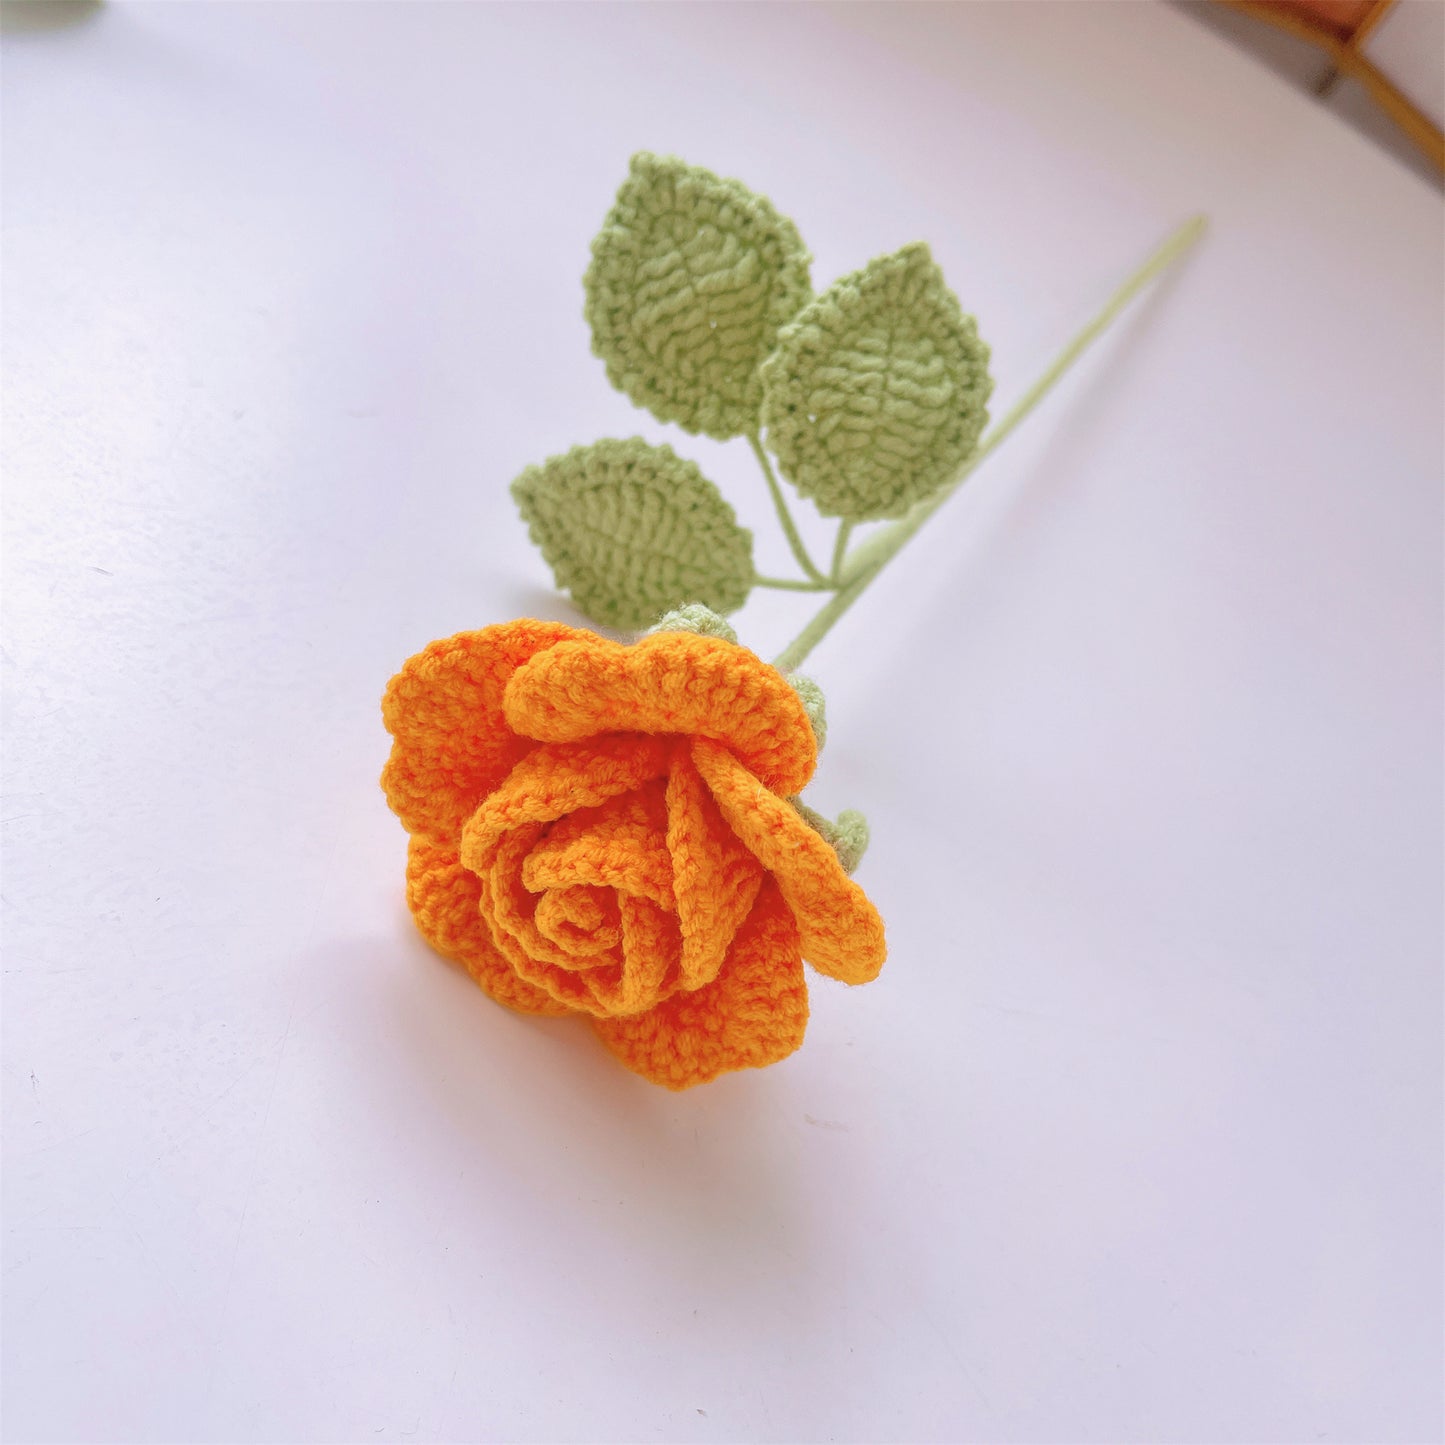 Rose Garden Delight: Handgefertigte Häkelrosen für eine bezaubernde Inneneinrichtung